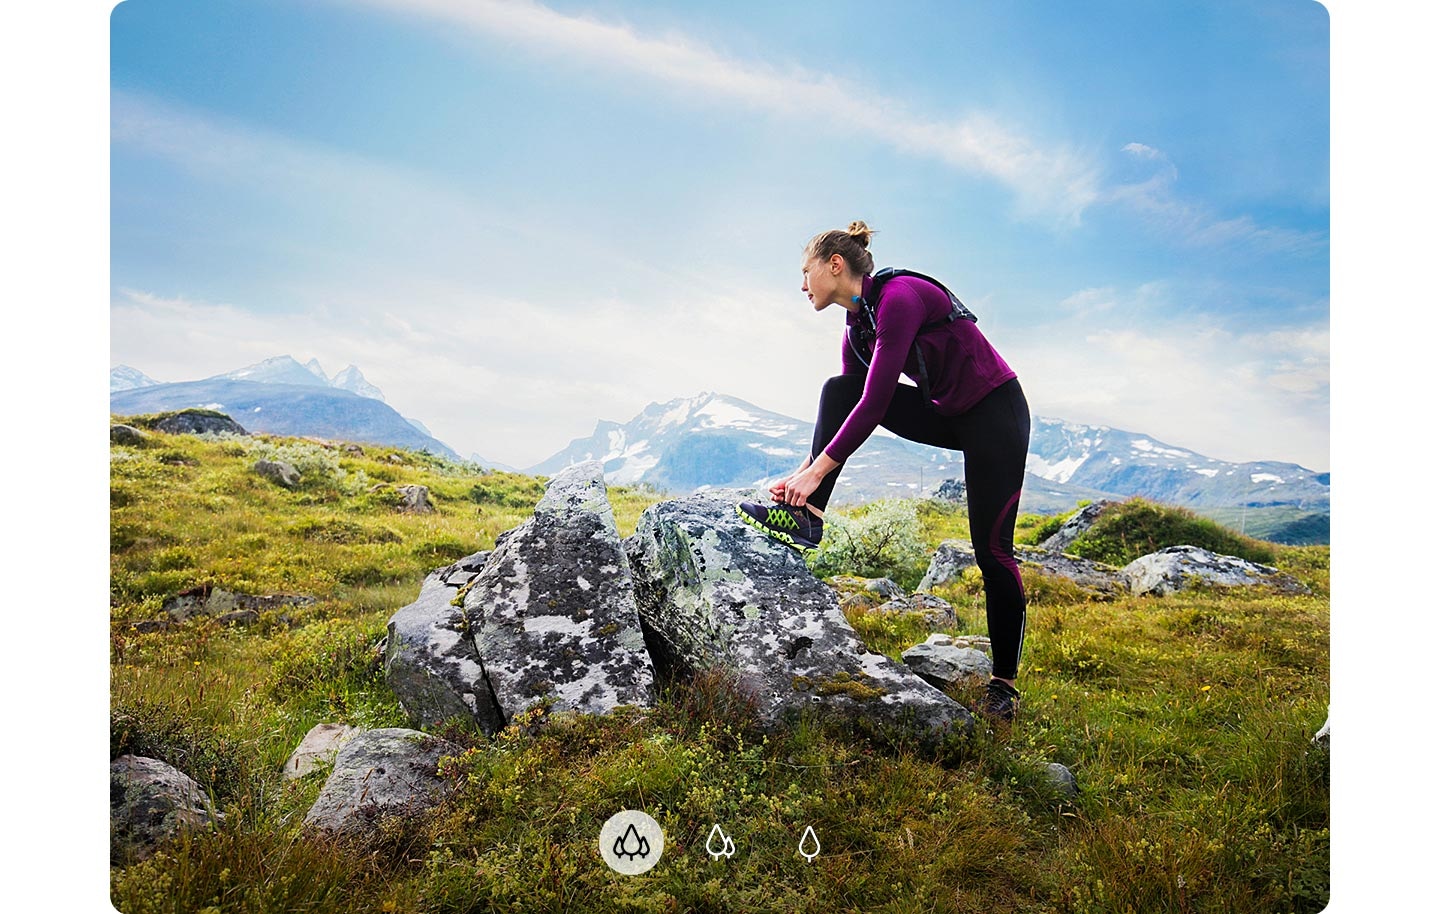 Una mujer mira a la distancia con su pie sobre una roca y montañas que se muestran en el fondo, lo que indica que A72 puede capturar una imagen más amplia con la cámara ultra gran angular.